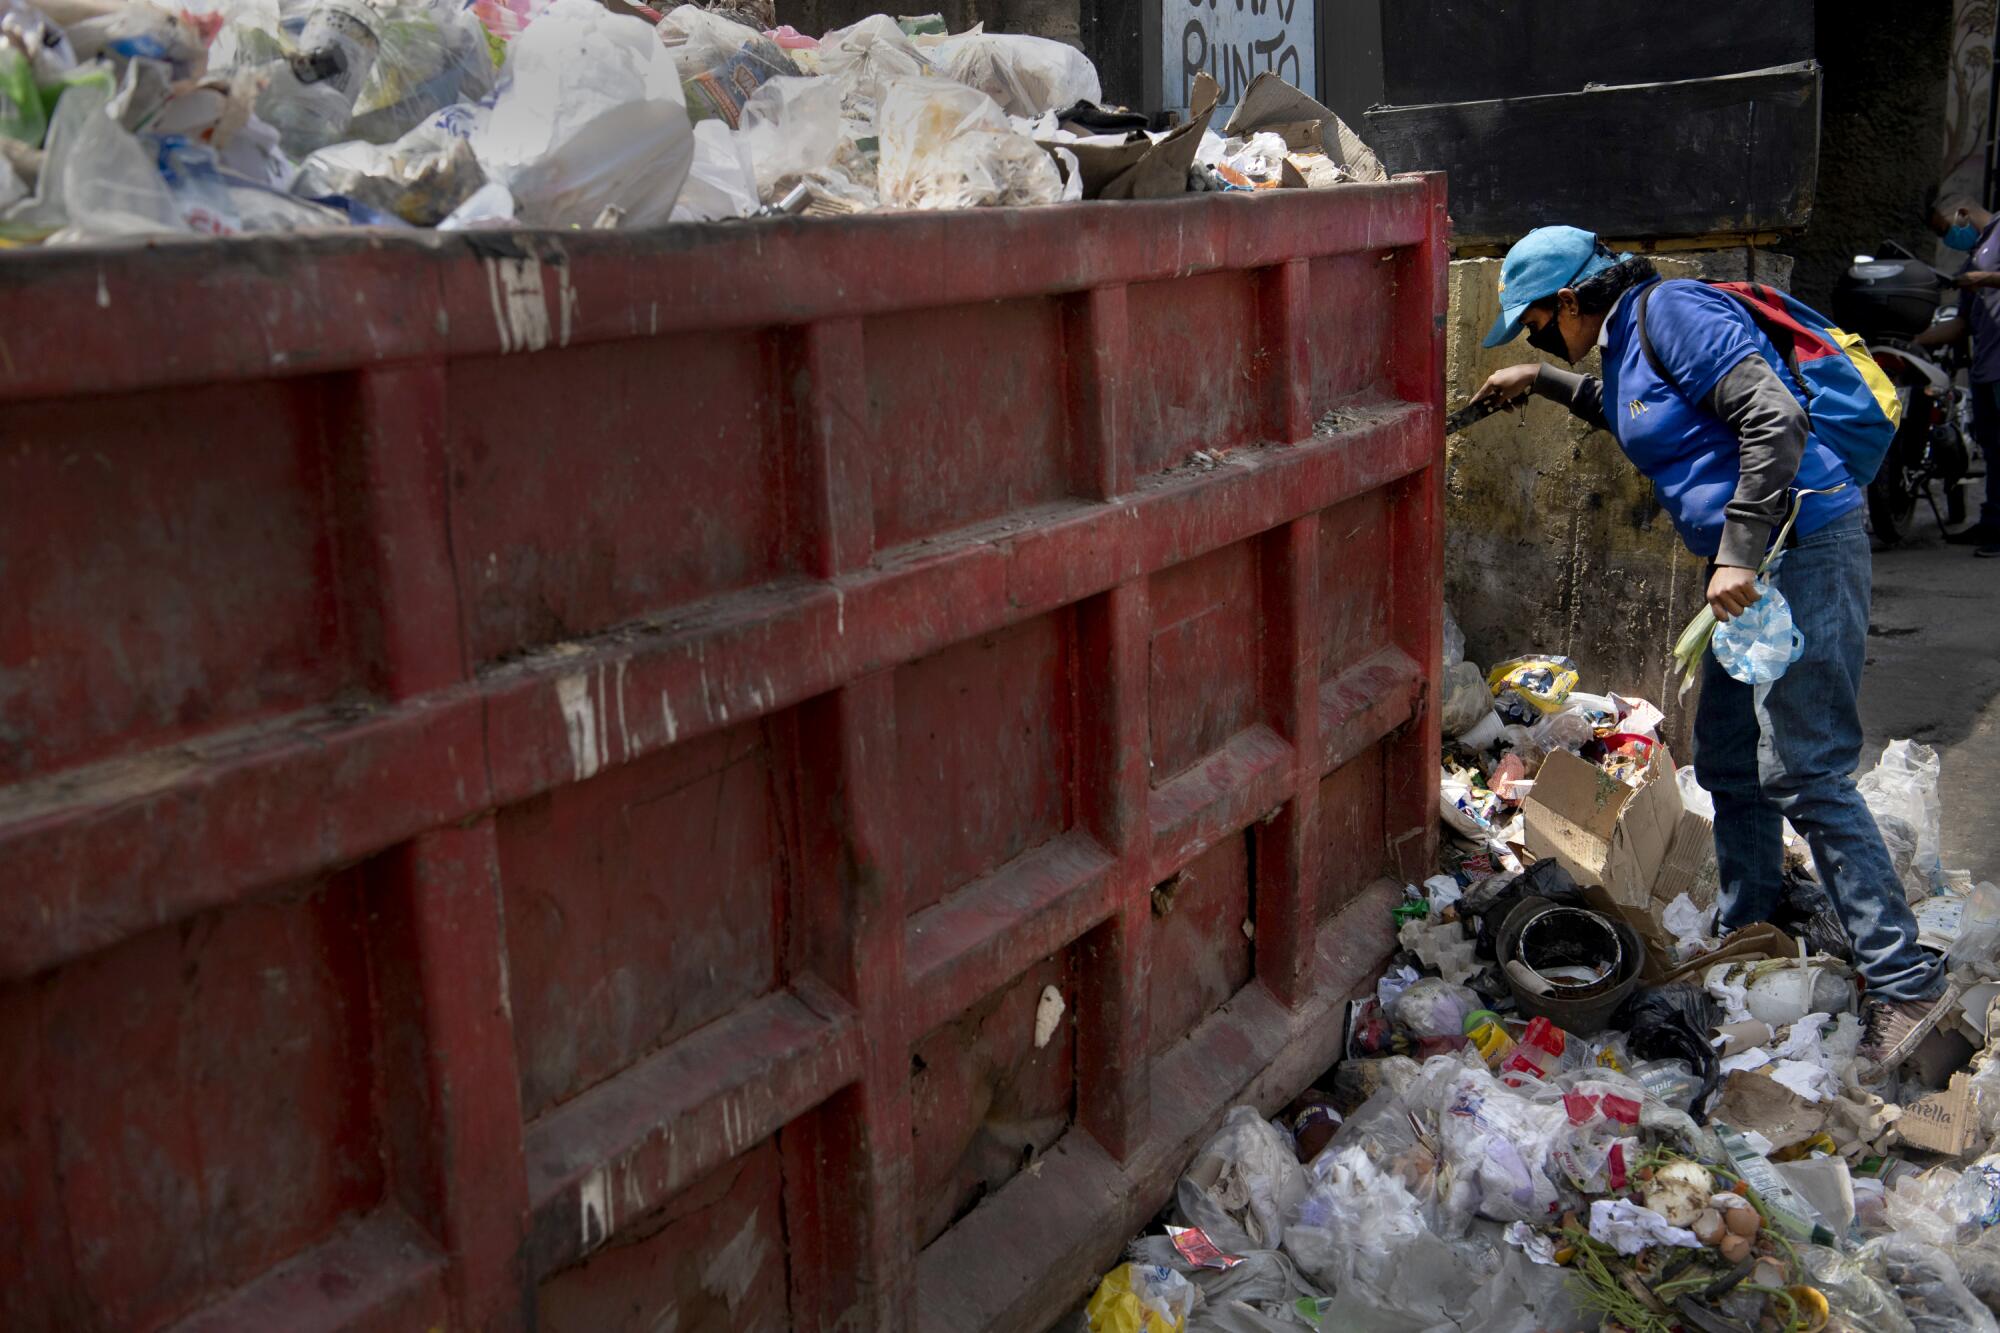 Una persona revuelve en la basura en busca de comida, el 23 de marzo pasado, en Caracas, Venezuela. Aunque el presidente de esa nación, Nicolás Maduro, declaró una cuarentena nacional, la comunidad internacional está preocupada por cómo el país controlará la pandemia con sus niveles crecientes de pobreza